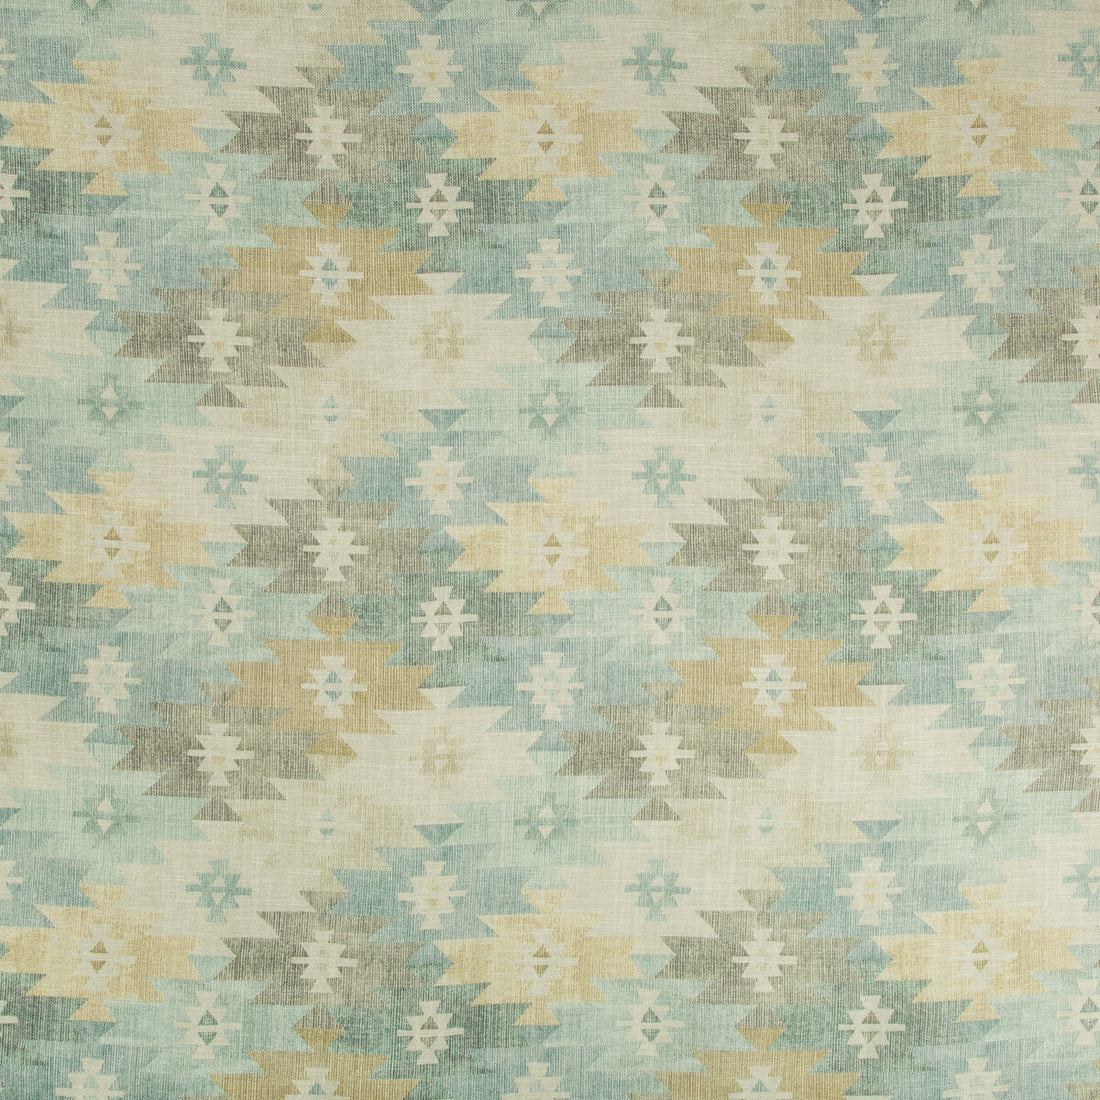 Kravet Basics fabric in tucumcari-15 color - pattern TUCUMCARI.15.0 - by Kravet Basics